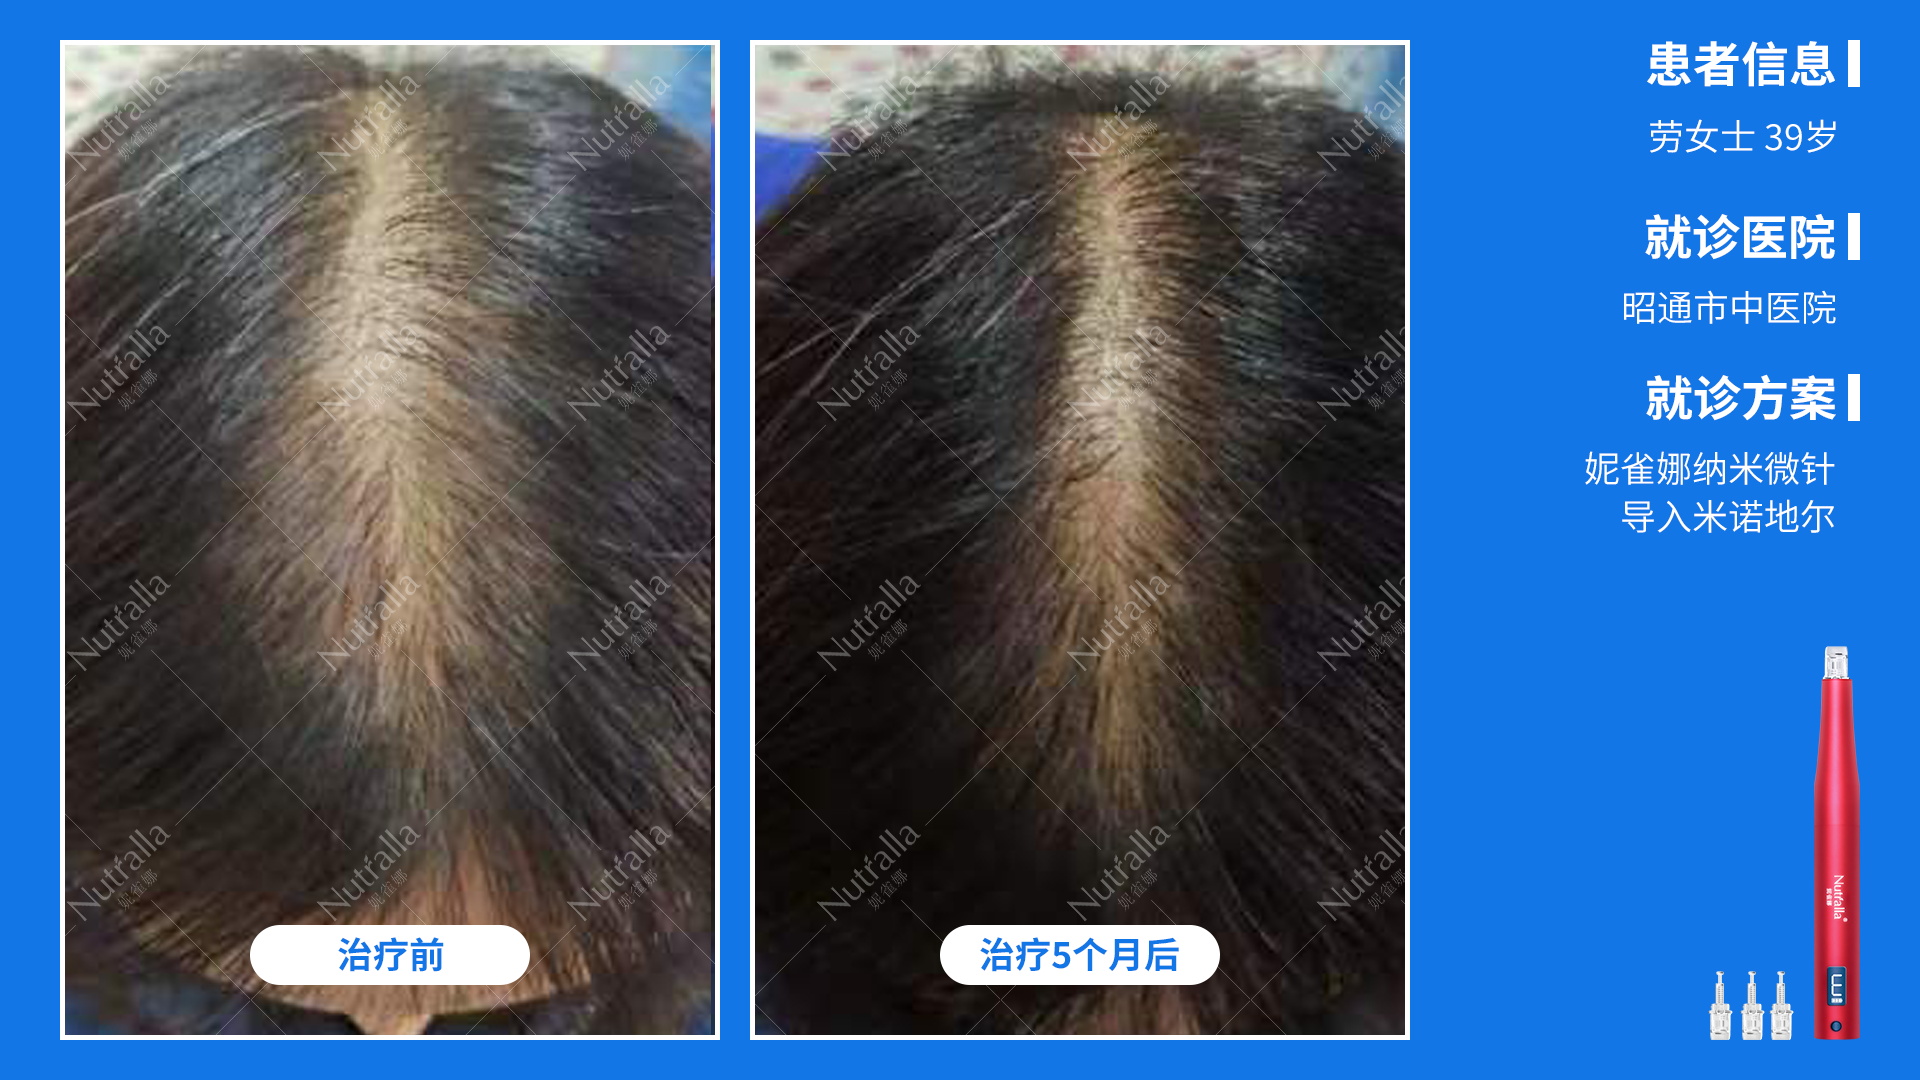 昭通市中医院  患者女性  39岁  诊断  雄激性脱发  治疗  米诺地尔  微针联合导入治疗5个月